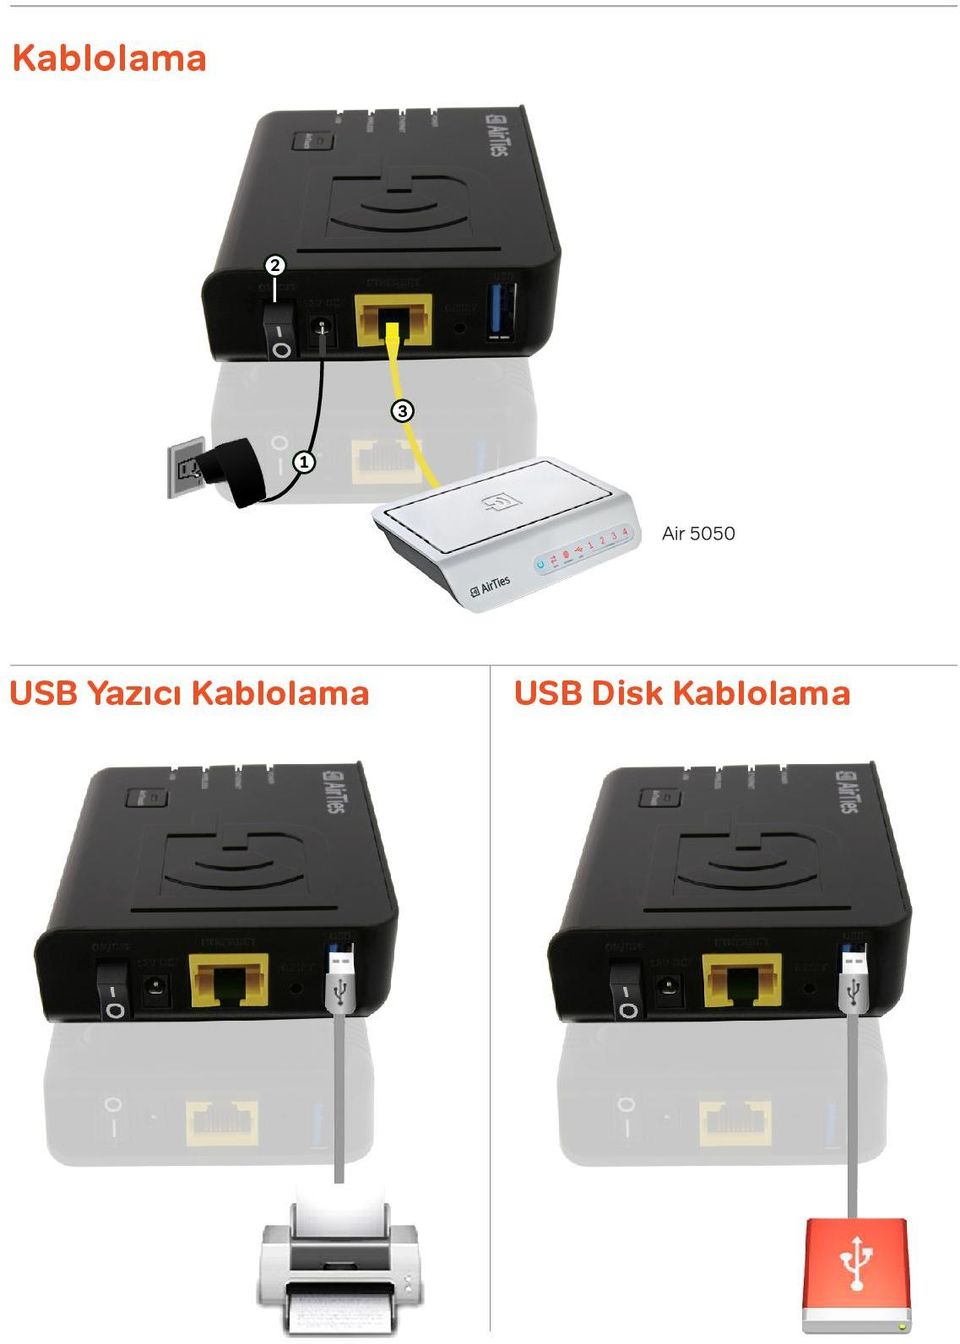 Kablolama USB